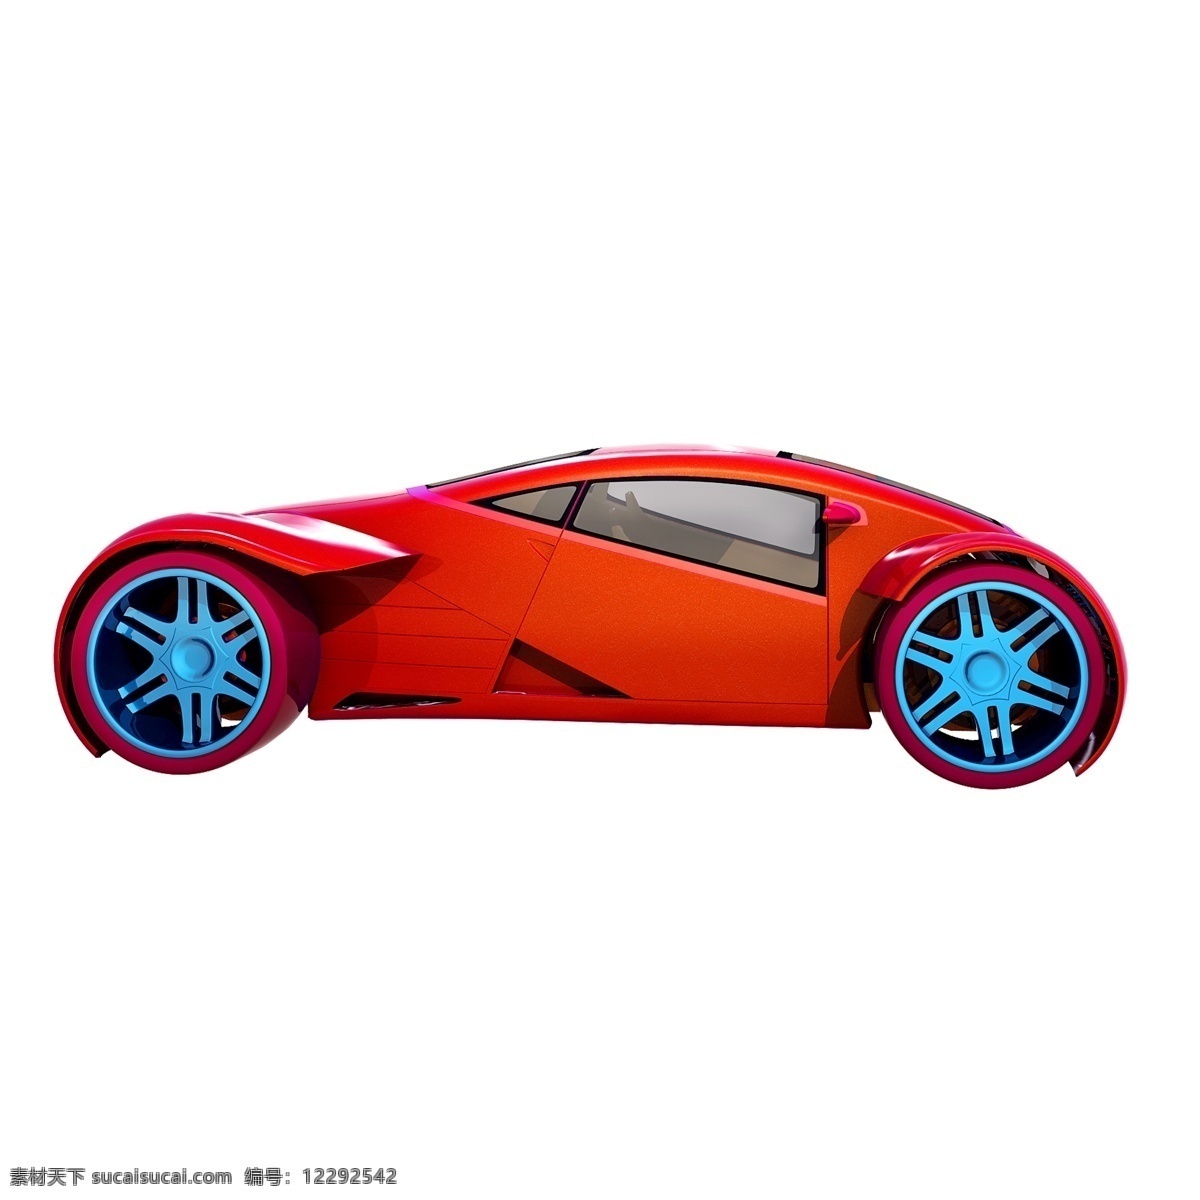 科幻 汽车 图 立体 轿车 小车 未来 跑车 渐变色 质感 精致 炫酷 png图 创意 套图